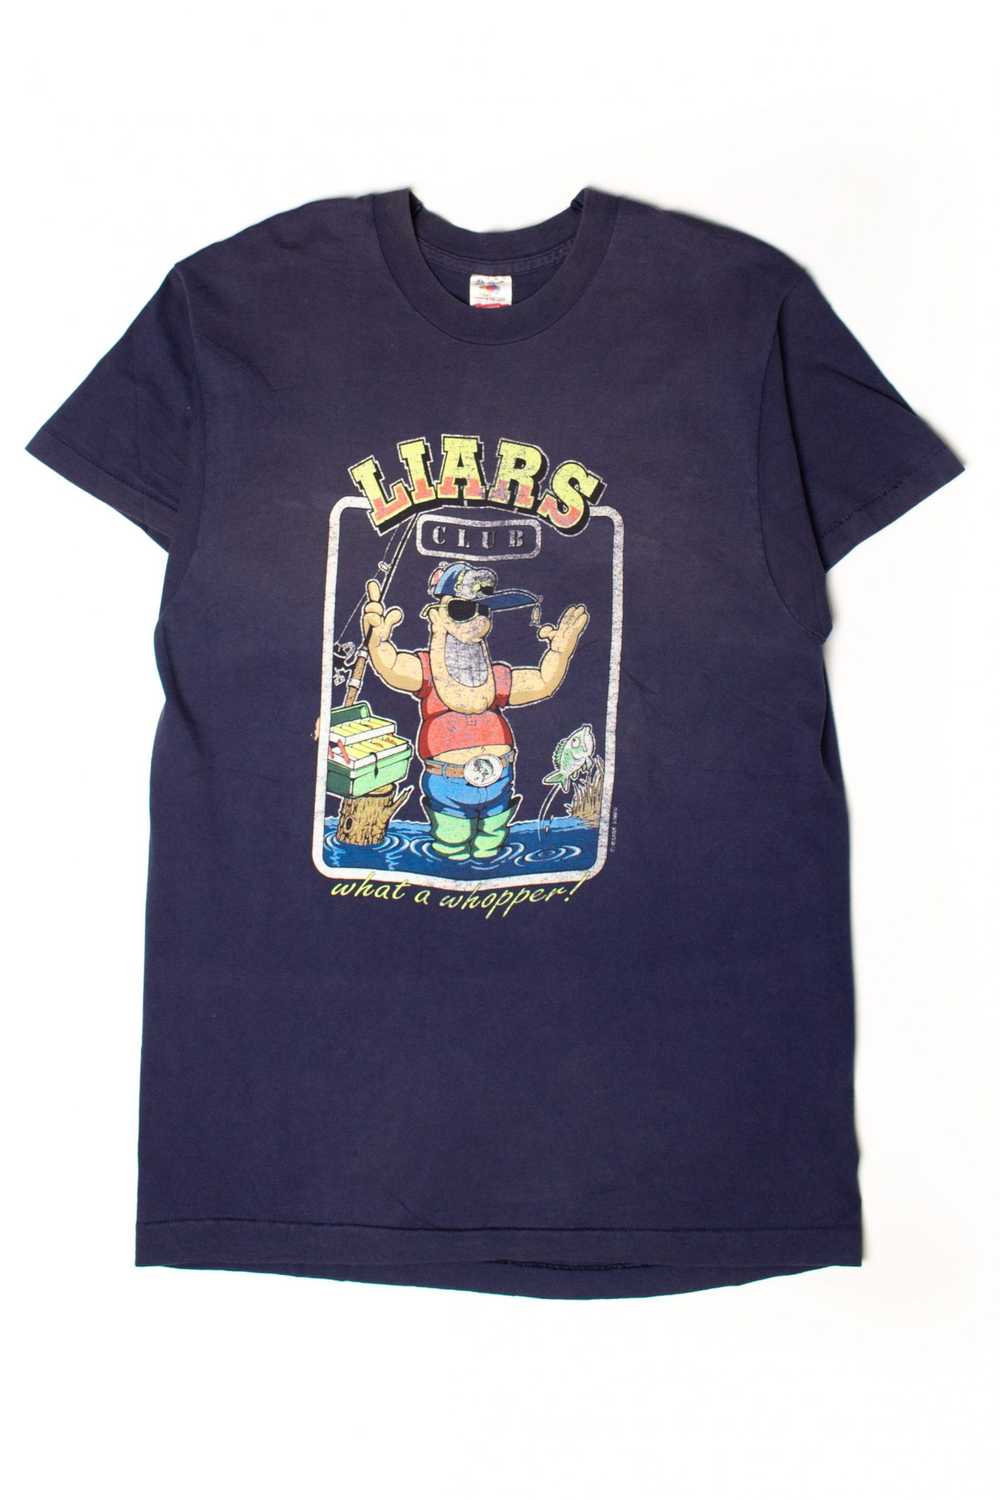 Vintage Liars Club T-Shirt (1990s) - image 2